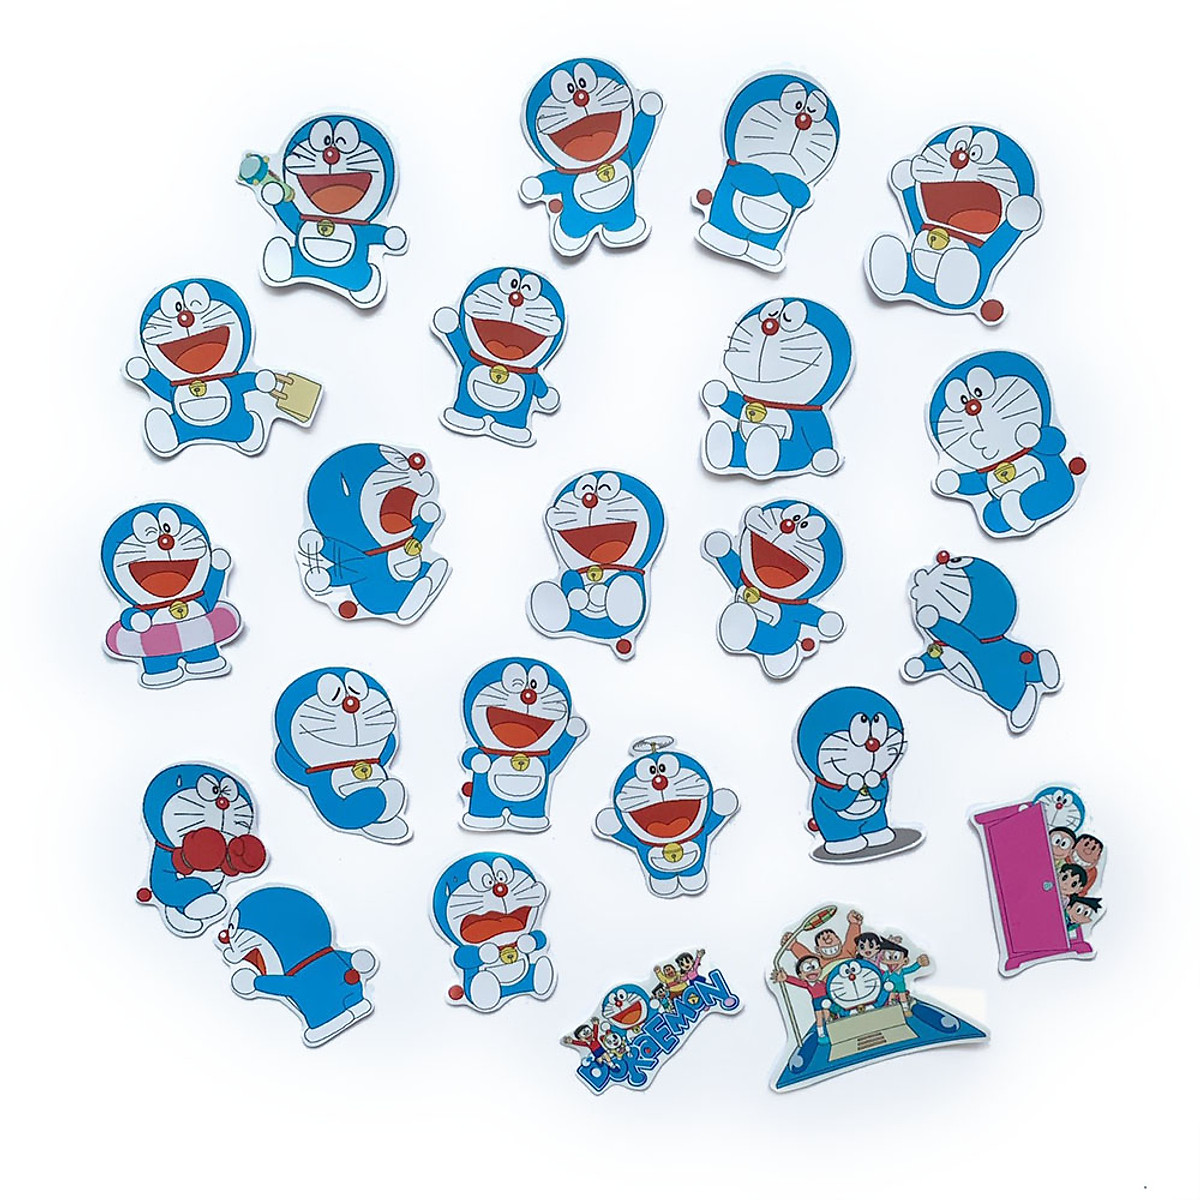 Bộ sticker Doraemon là một sự lựa chọn tuyệt vời để thể hiện cảm xúc và truyền tải thông điệp của bạn. Hãy xem những bộ sticker Doraemon đáng yêu và đầy sáng tạo này để thưởng thức và lựa chọn cho mình những hình ảnh yêu thích nhất.